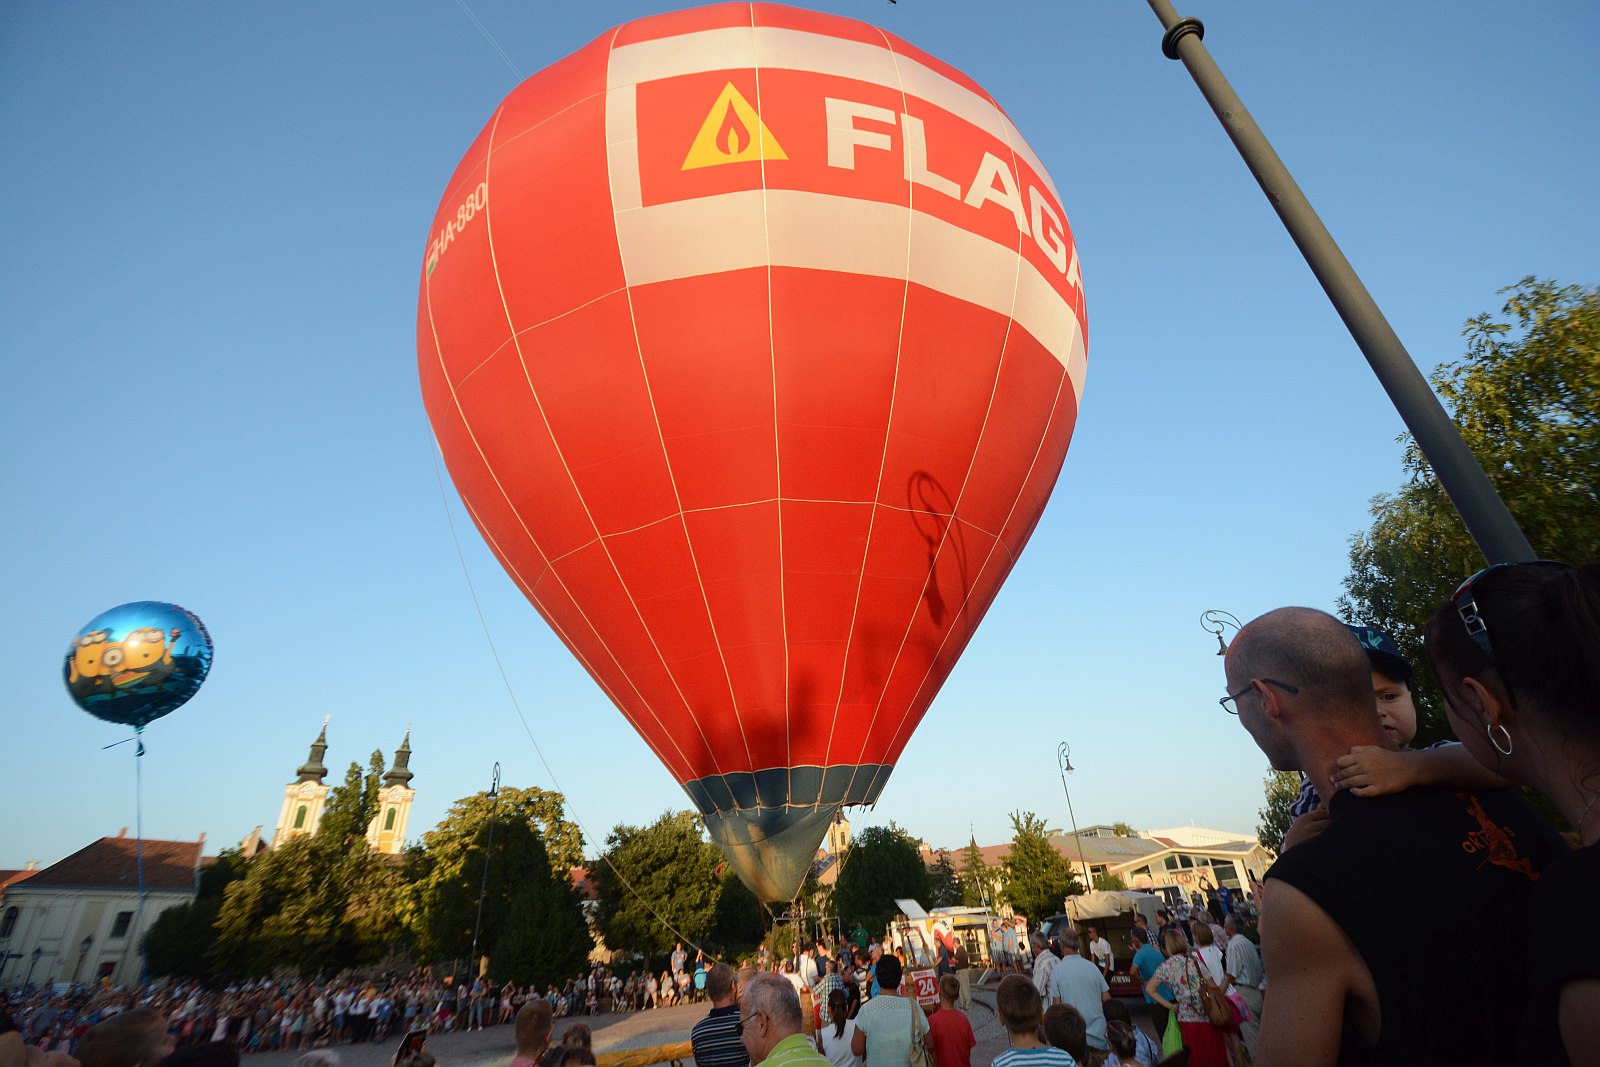 Így kezdődött az Alba Pláza előtt a hőlégballon karnevál